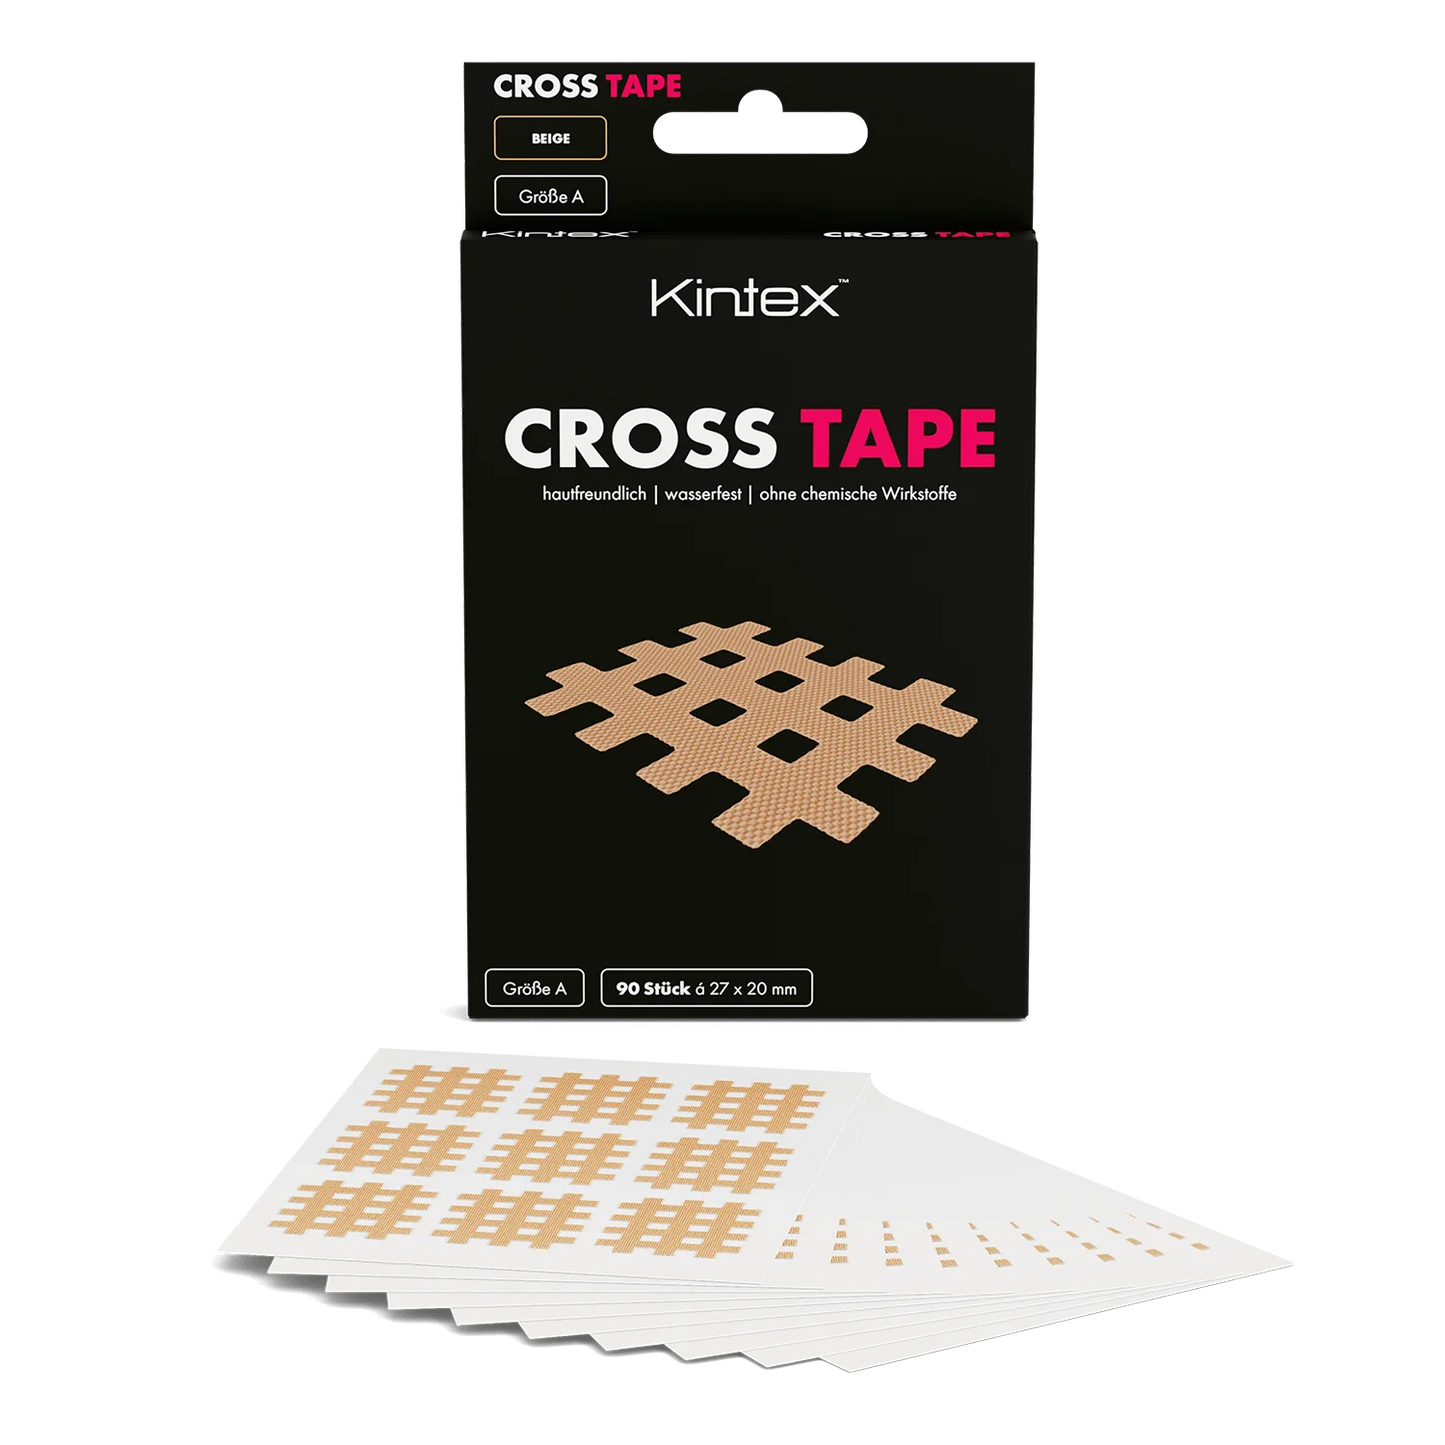 Cross Tape Größe B